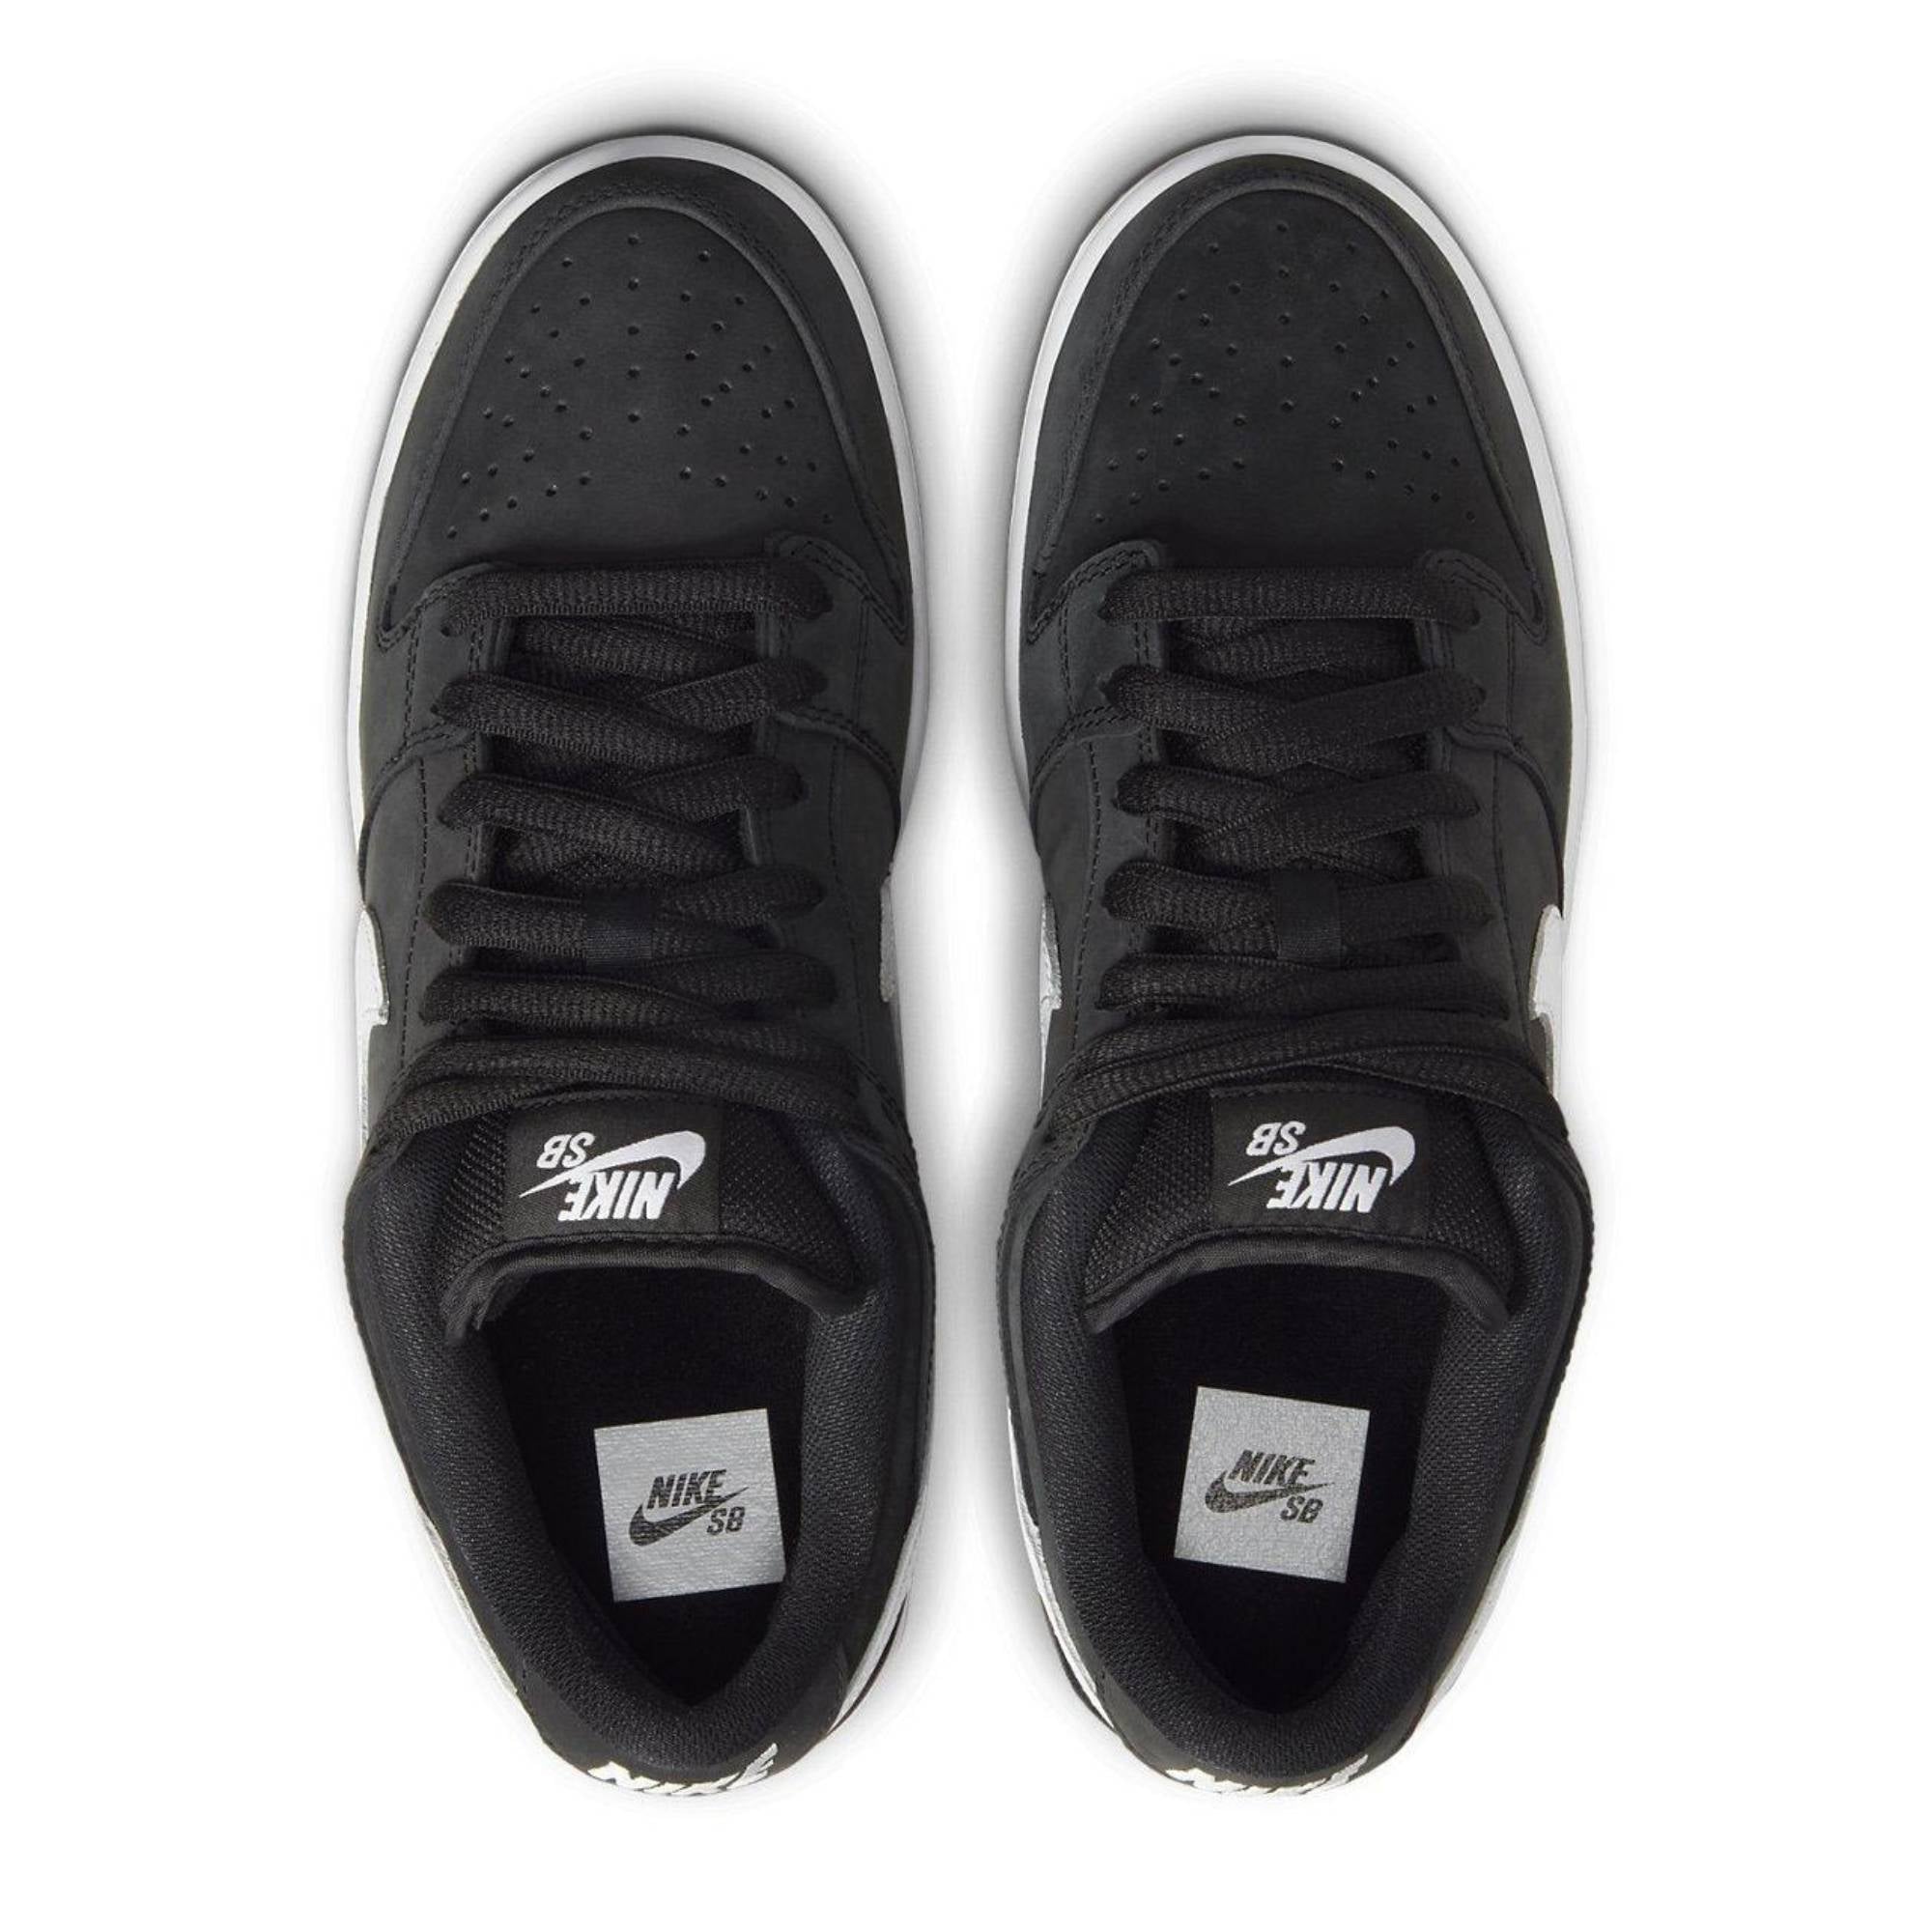 Nike Sb Dunk Low ’Black Gum’ Sneakers